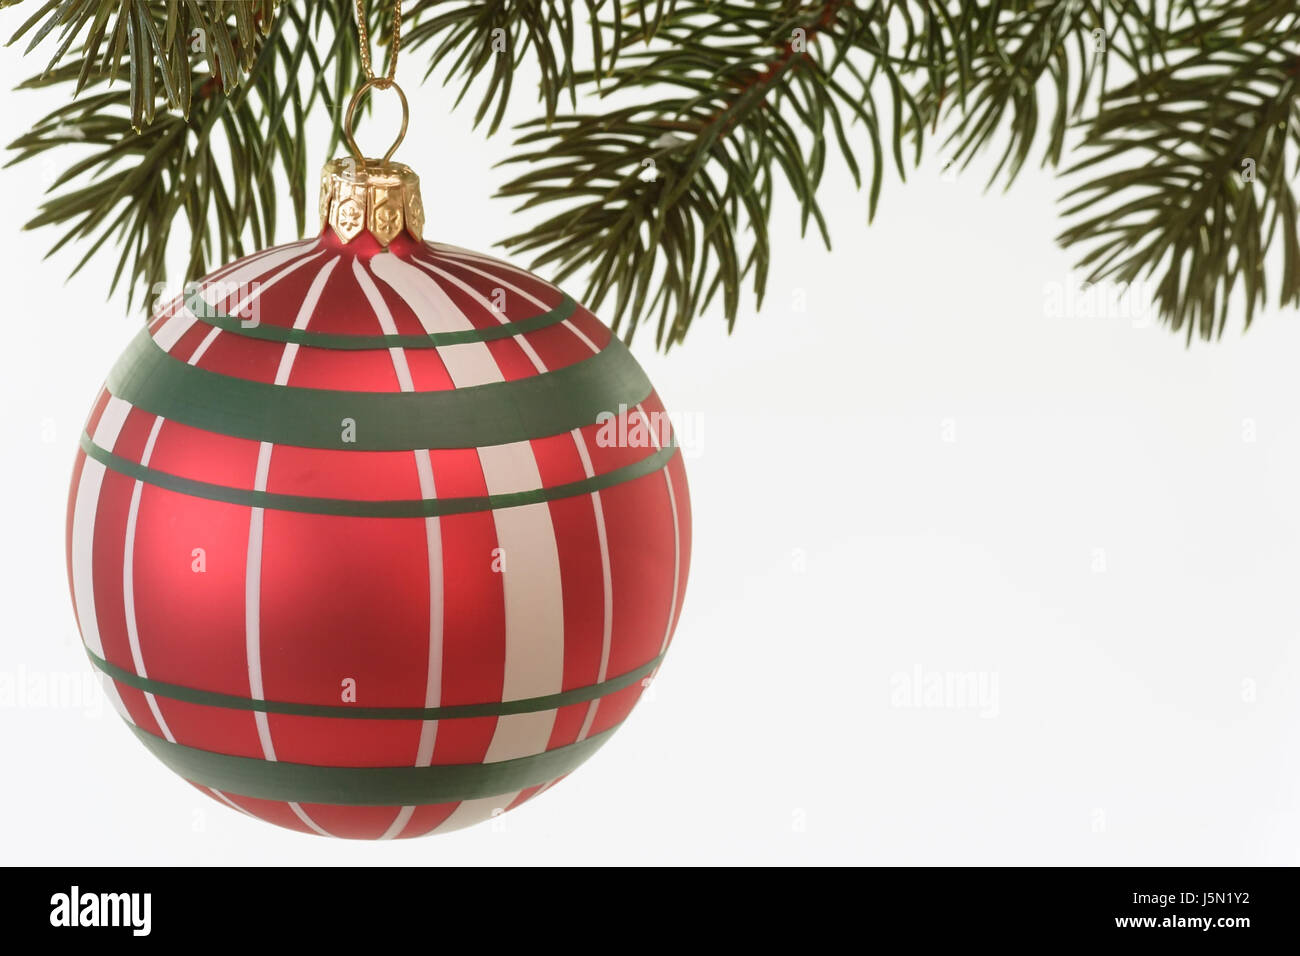 Adventsschmuck Dekoration Vorfreude auf Weihnachten Winter Weihnachten  Stockfotografie - Alamy